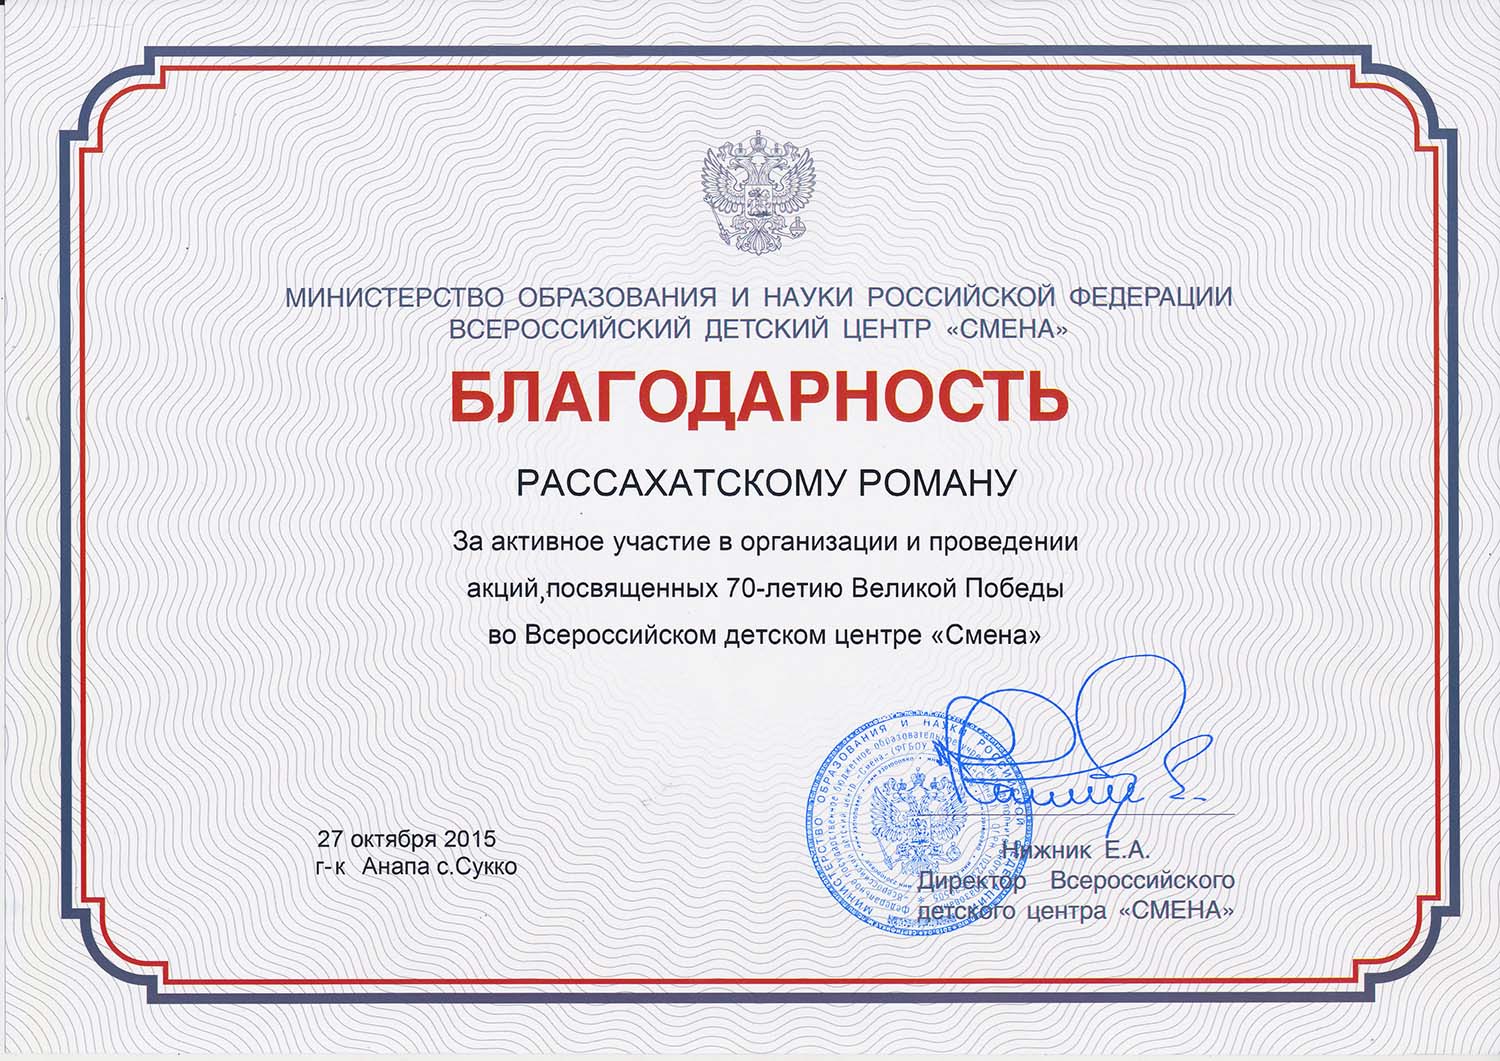 Студент колледжа представлял ВЭК в работе всероссийской профильной смены «Патриоты России»